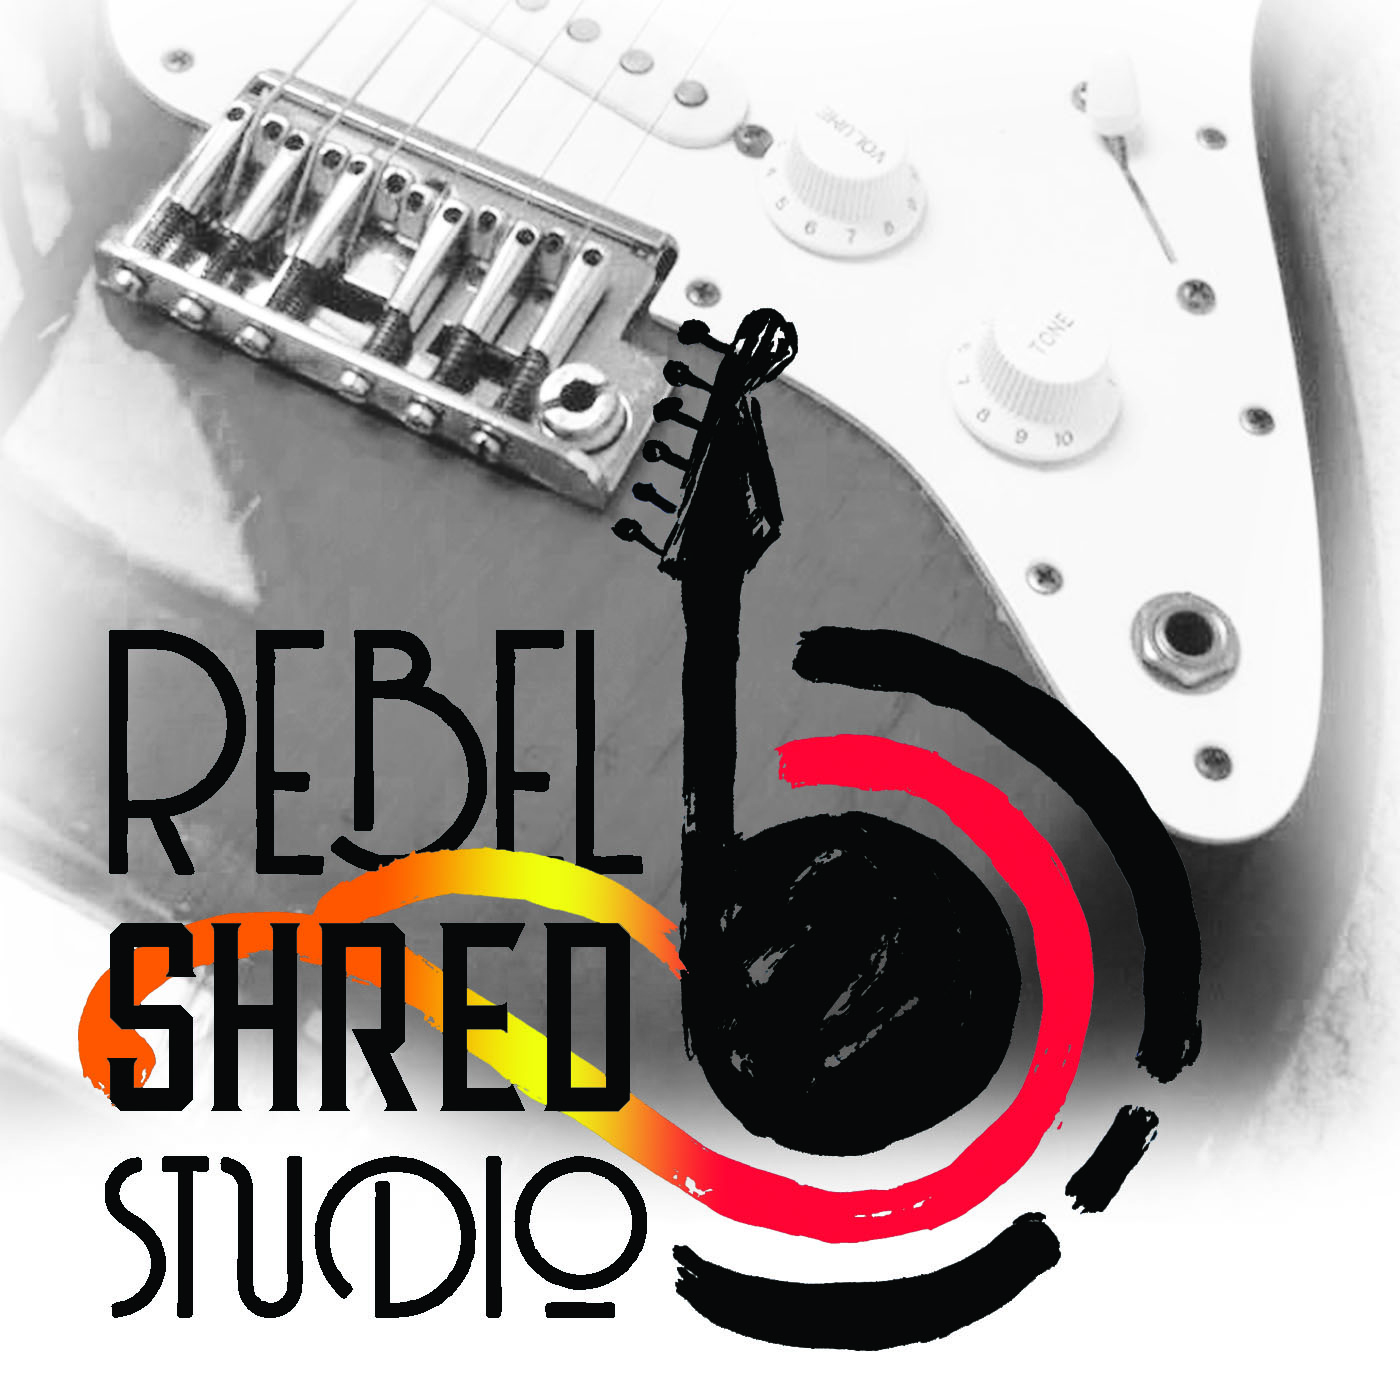 Rebel Shred Studio